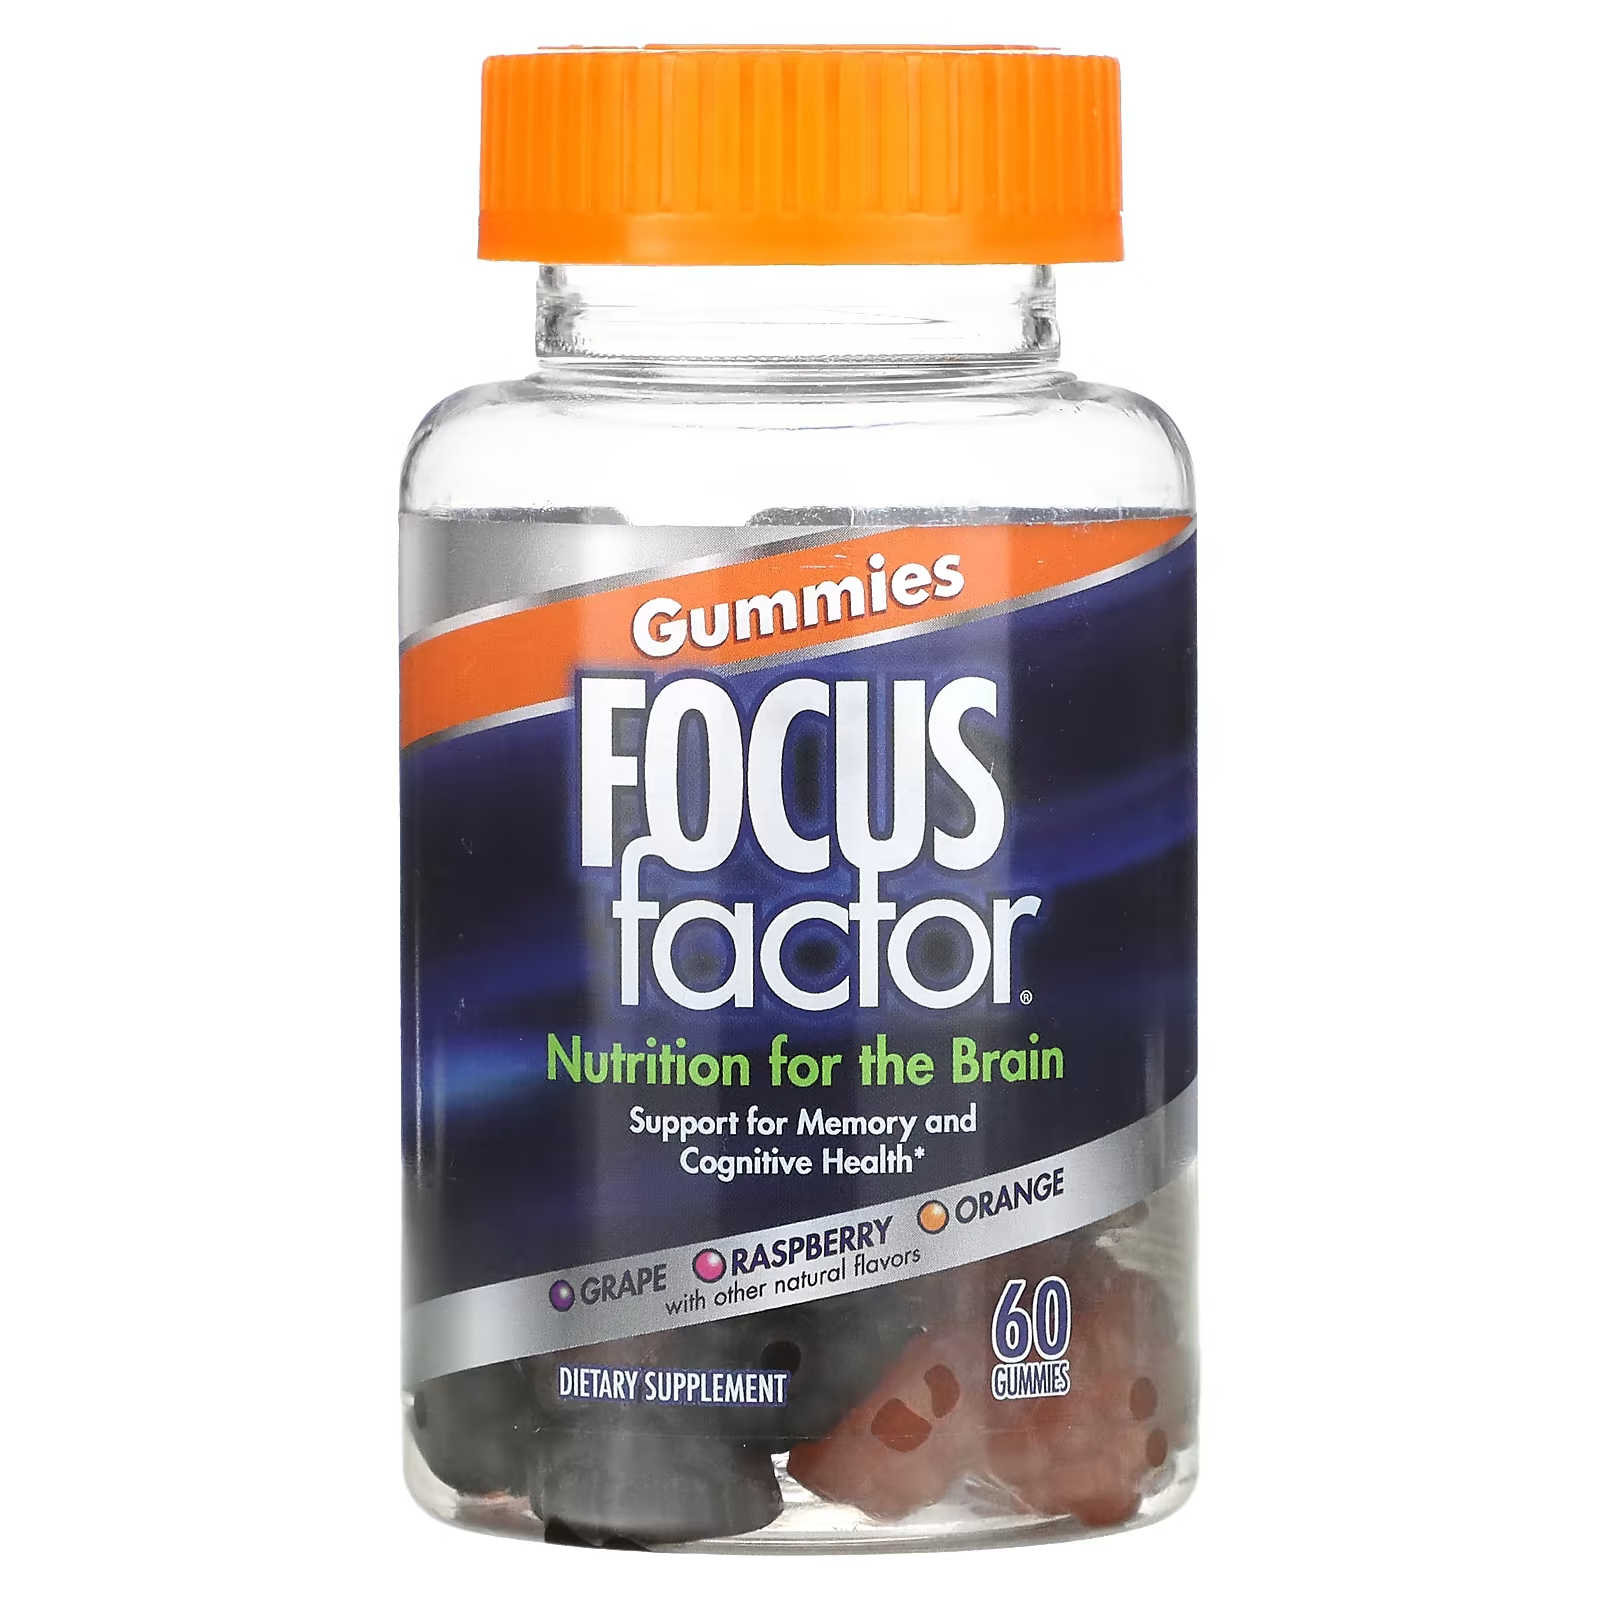 Пищевая добавка Focus Factor Nutrition For The Brain виноград, малина, апельсин, 60 жевательных таблеток focus factor добавка для детей focusfactor ягодный взрыв 60 жевательных пластинок